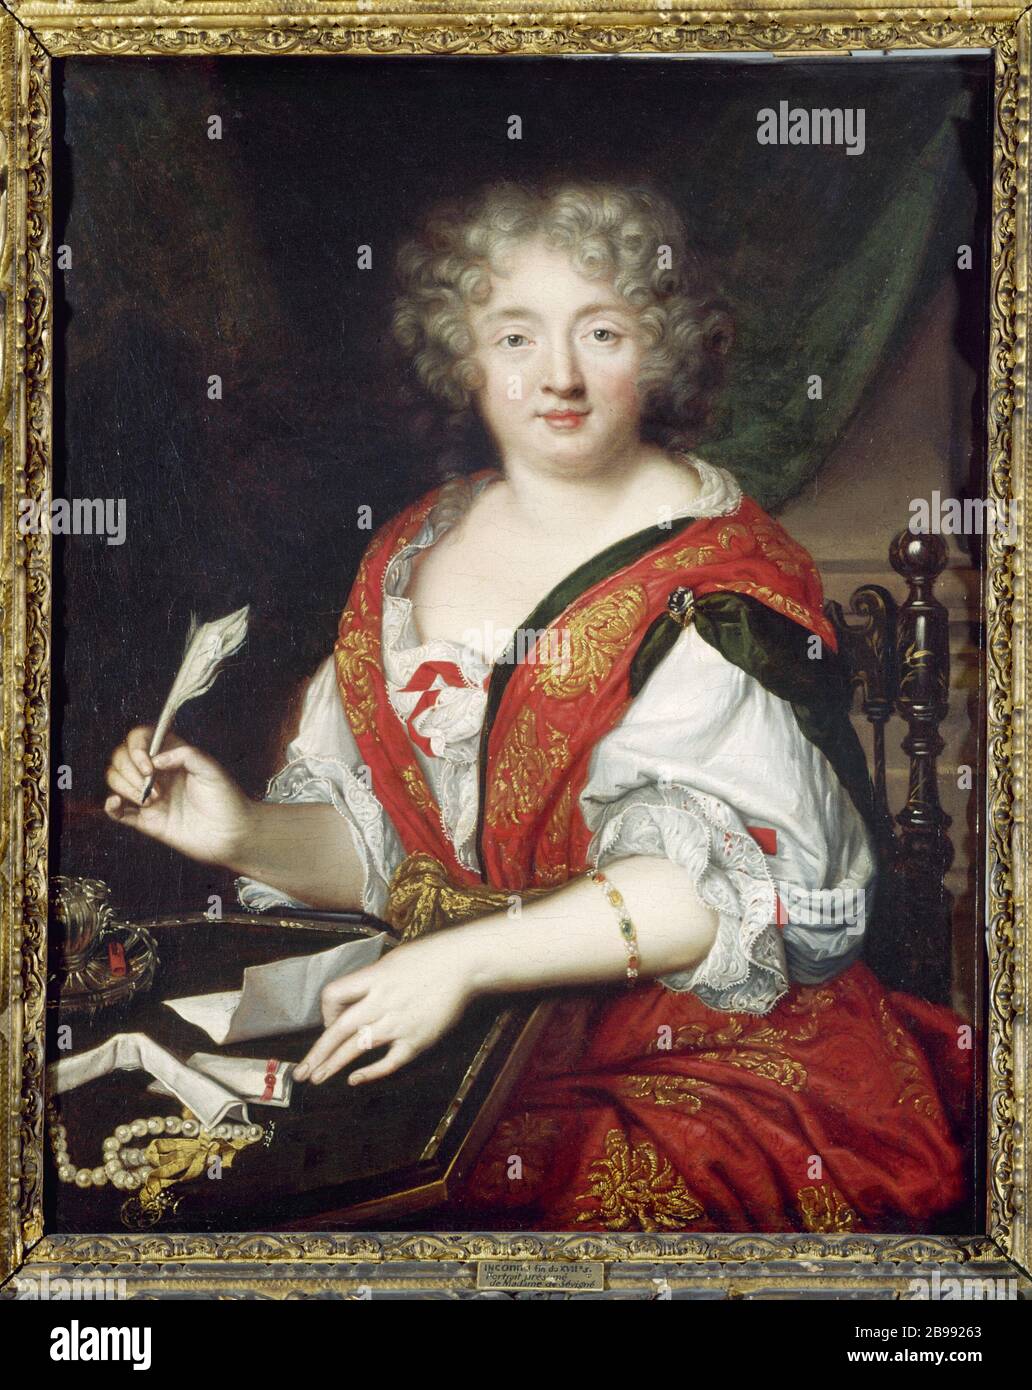 Ritratto di donna che scrive una volta Ritratto de femme écrivant, autrefois identifié comme Madame de Sévigné, vers 1680. Parigi, musée Carnavalet. Foto Stock